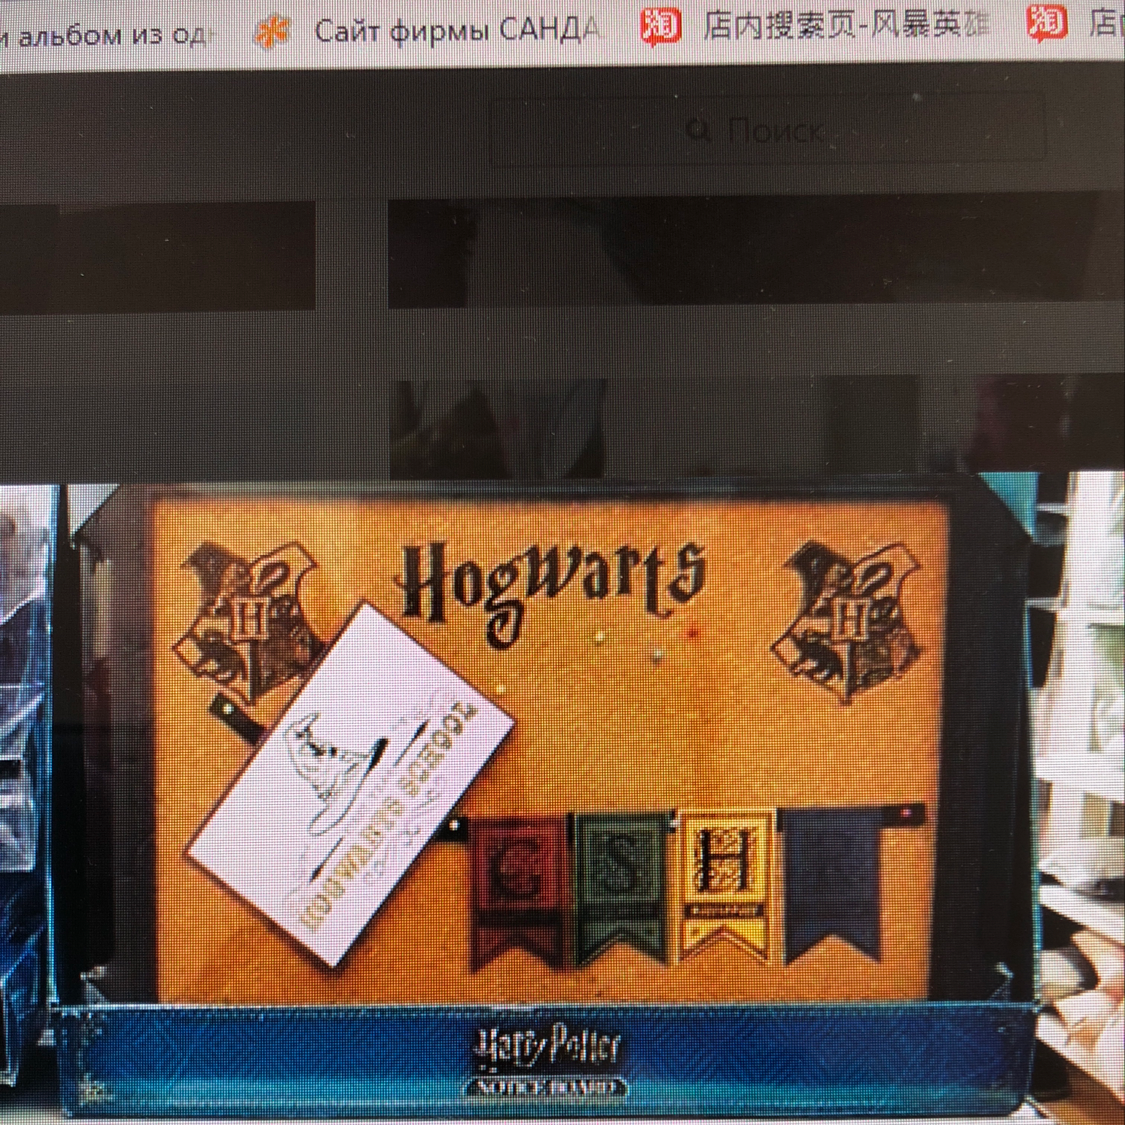 Hogwarts pin board